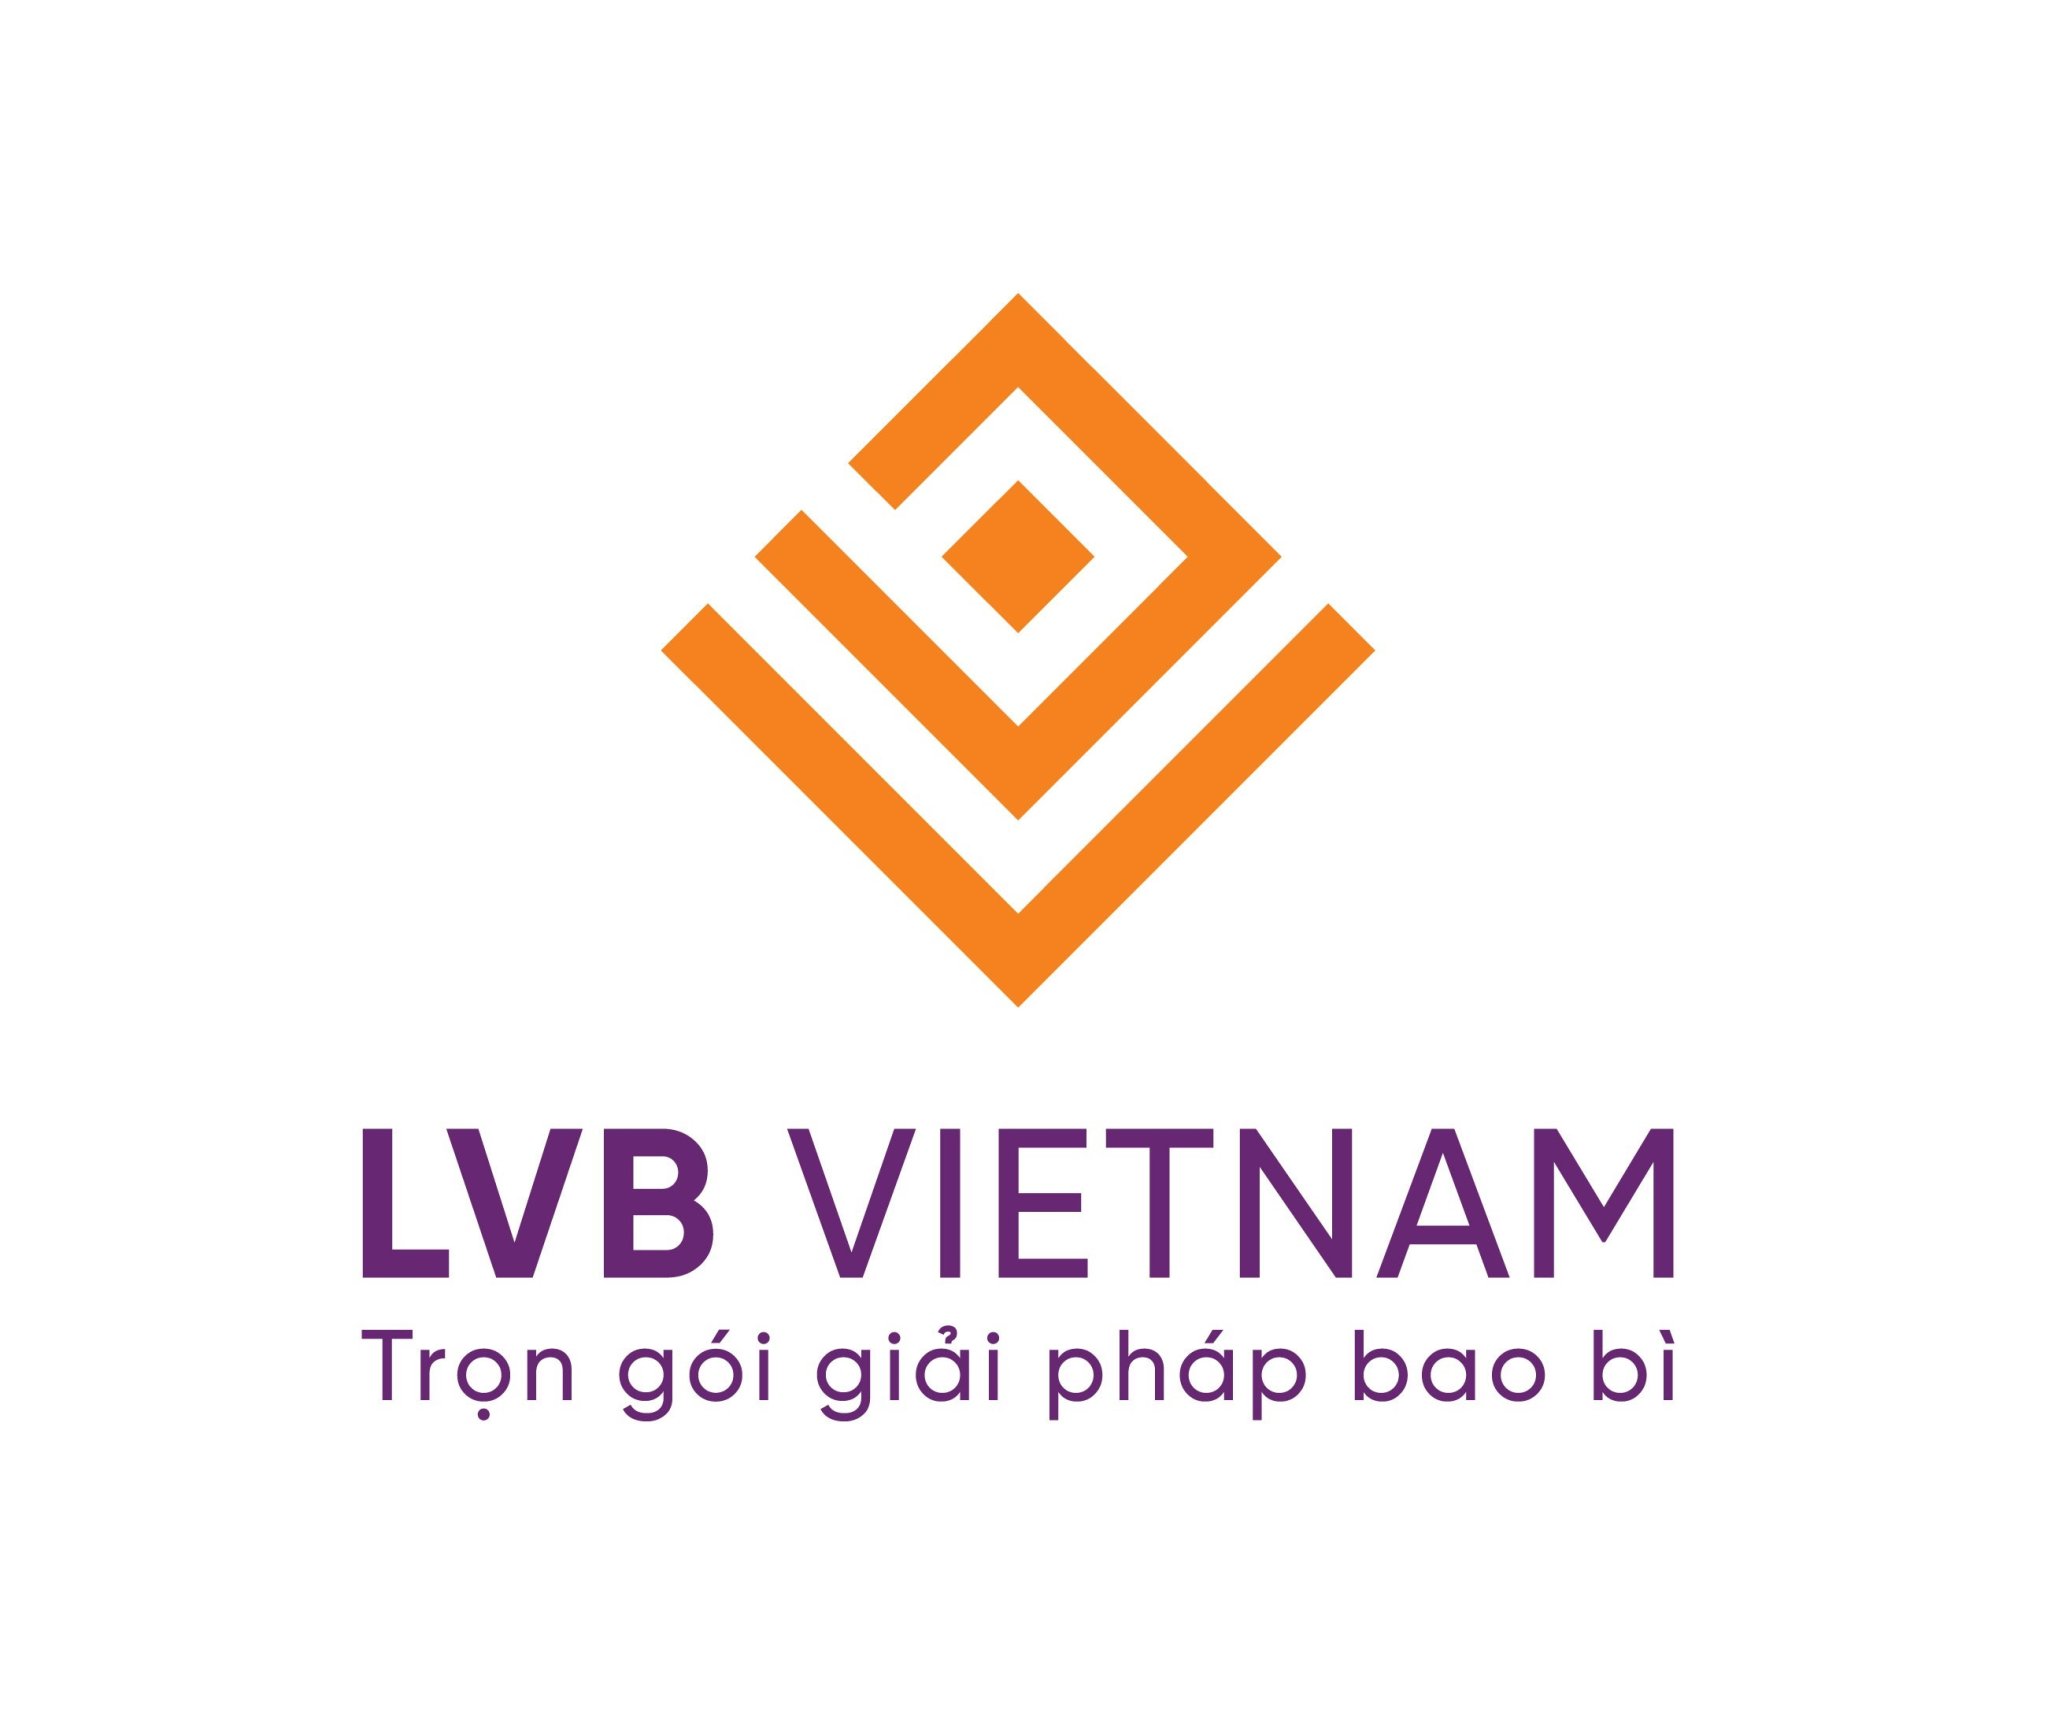 LVB  VIETNAM (lvb_vietnam)